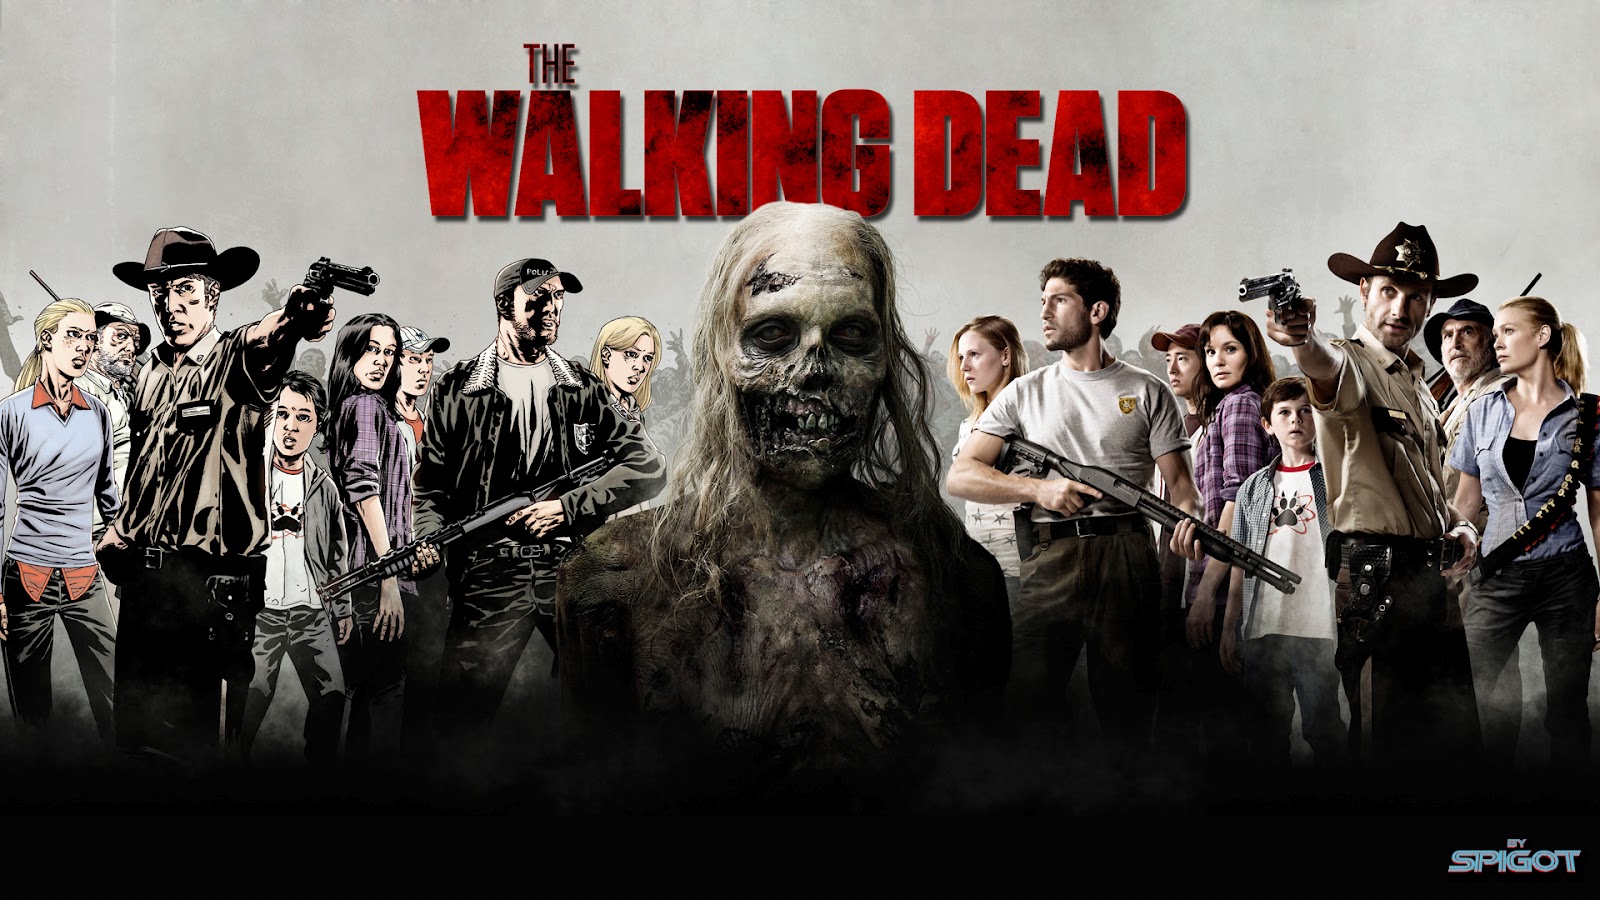 The Walking Dead Wallpaper HD 1600x900 ImageBankbiz